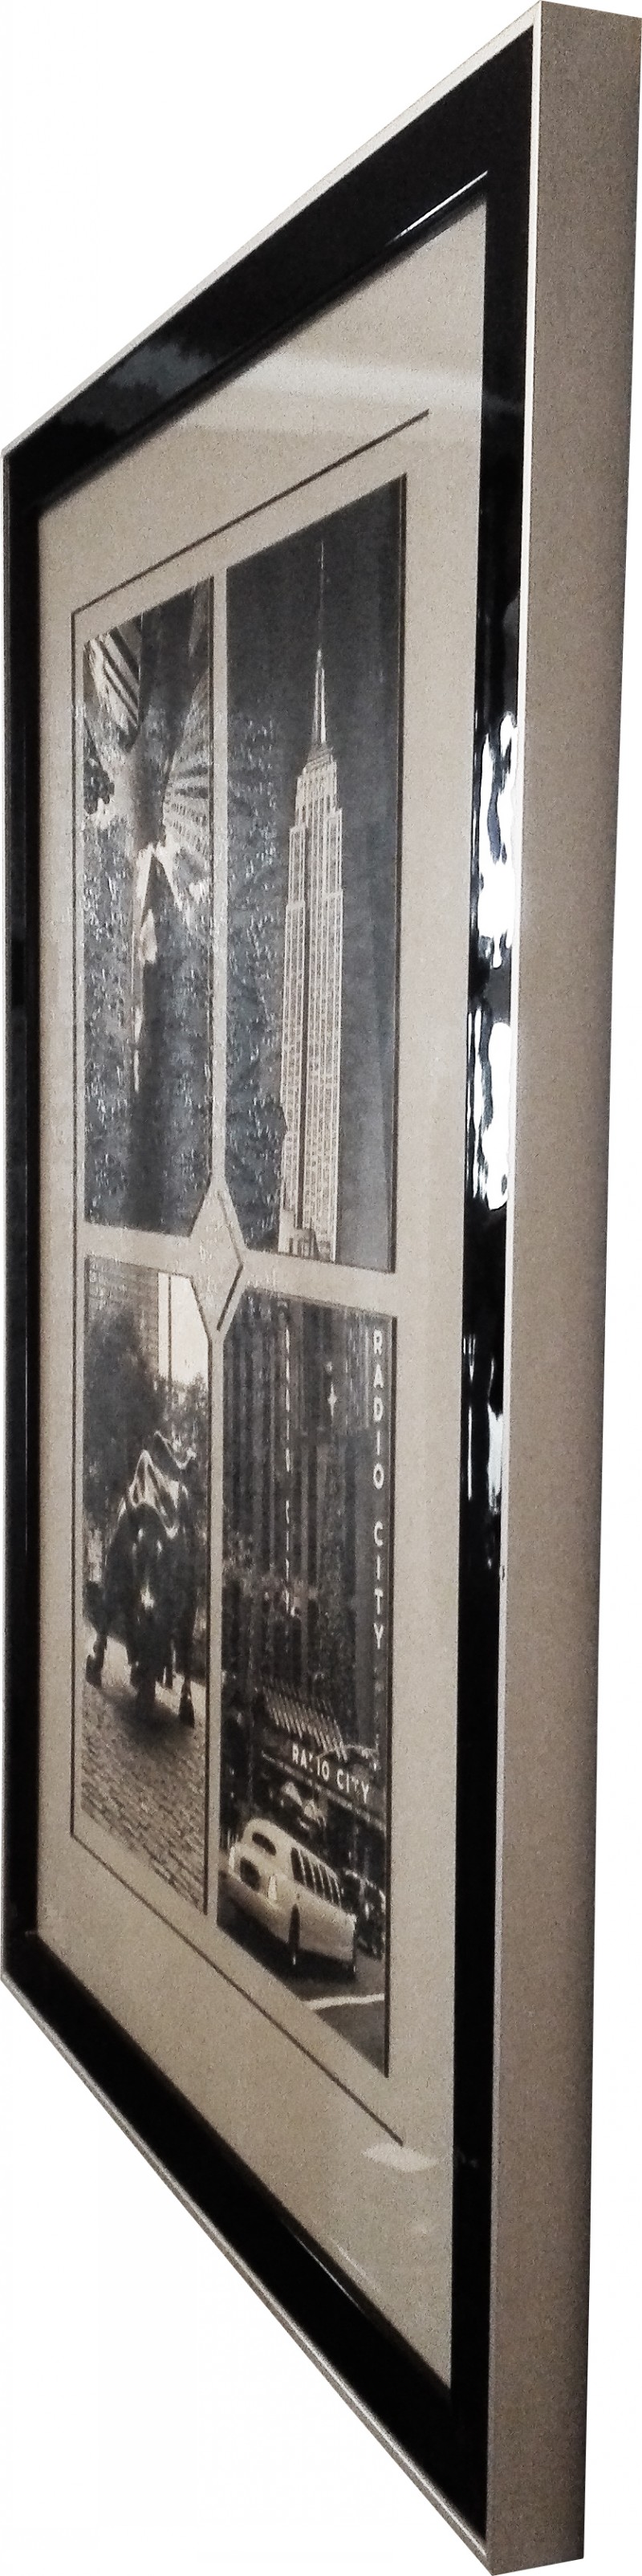 Оформление четырех ч/б фотографий в двойном багете с музейным паспарту